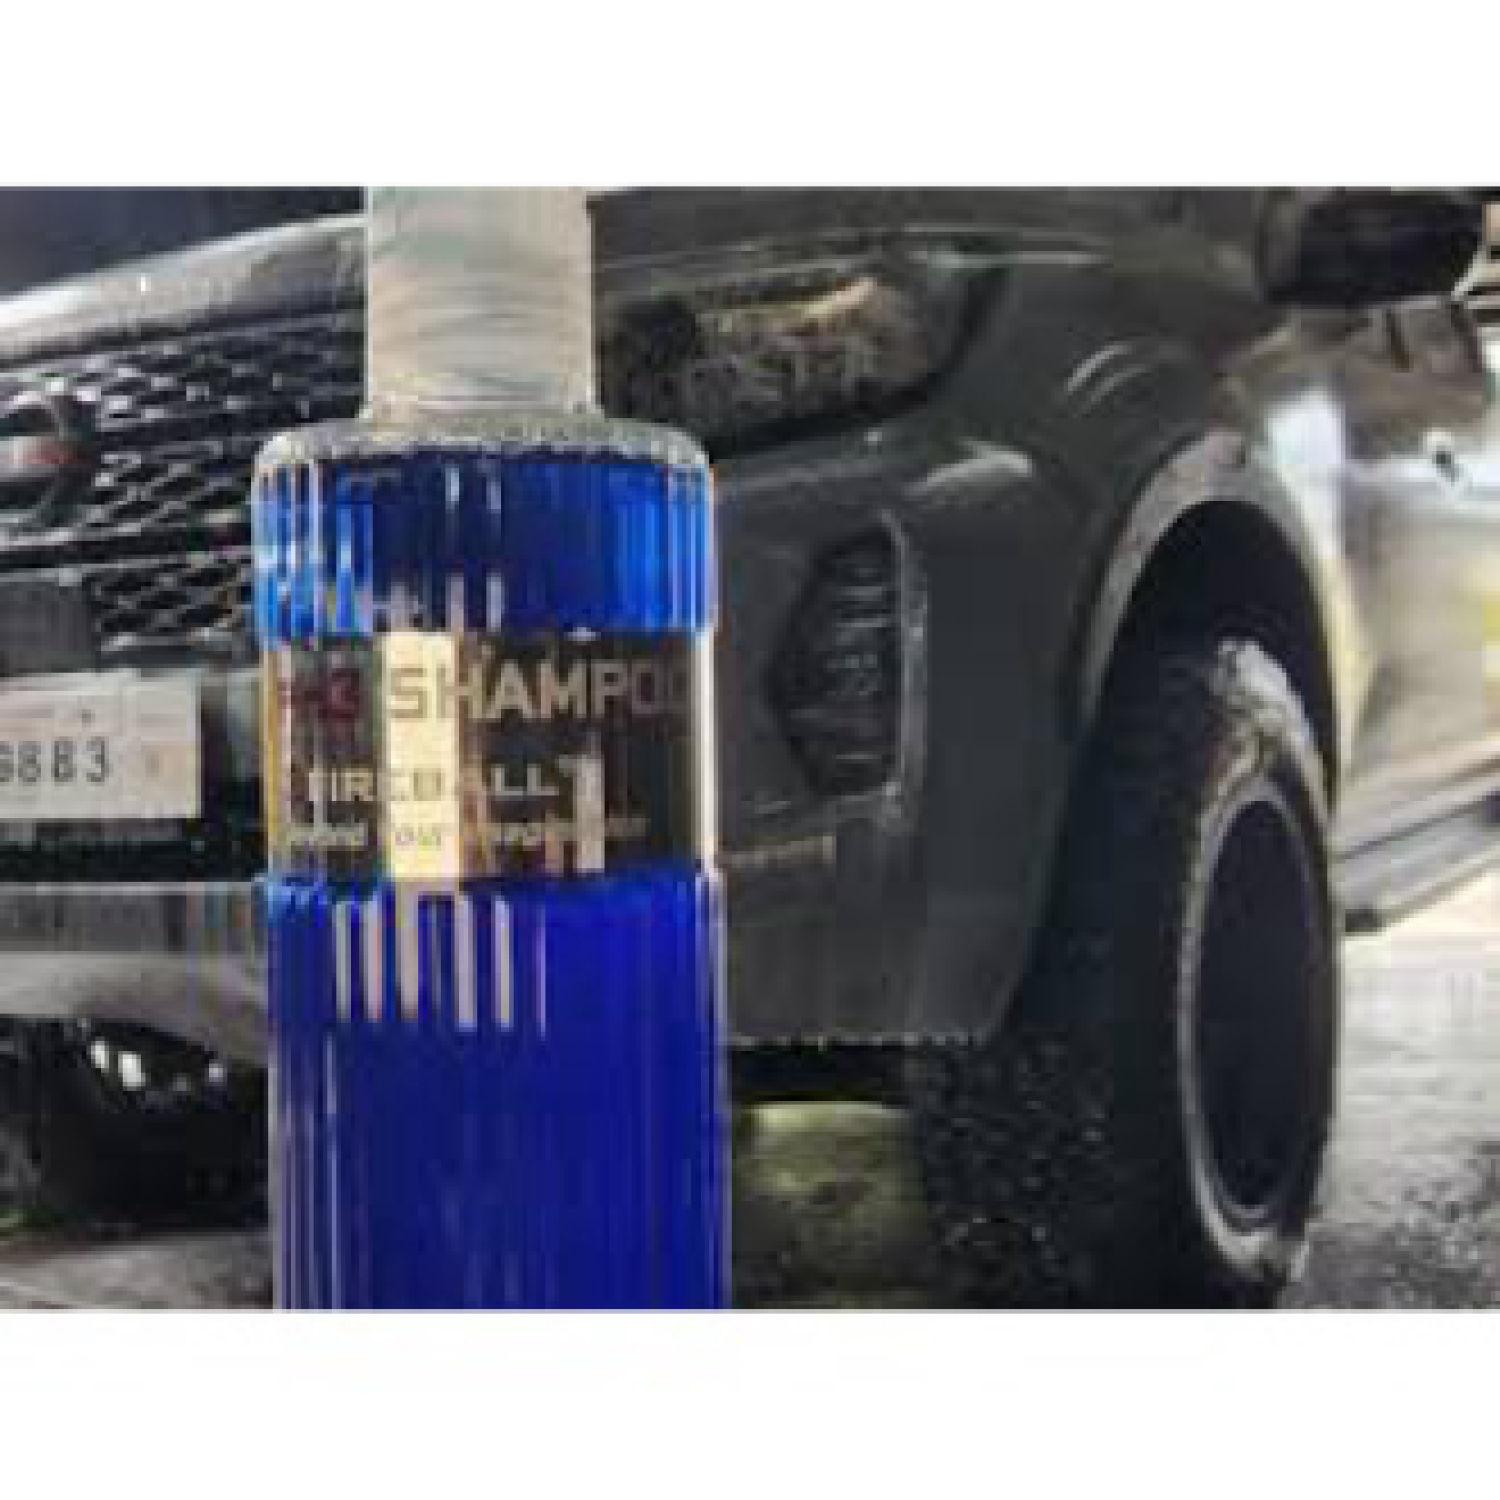 Dung dịch rửa xe, làm sạch xe bị bẩn nặng bề mặt cho ô tô, xe máy PH3 Shampoo 500ml, hàng Fireball, Hàn Quốc